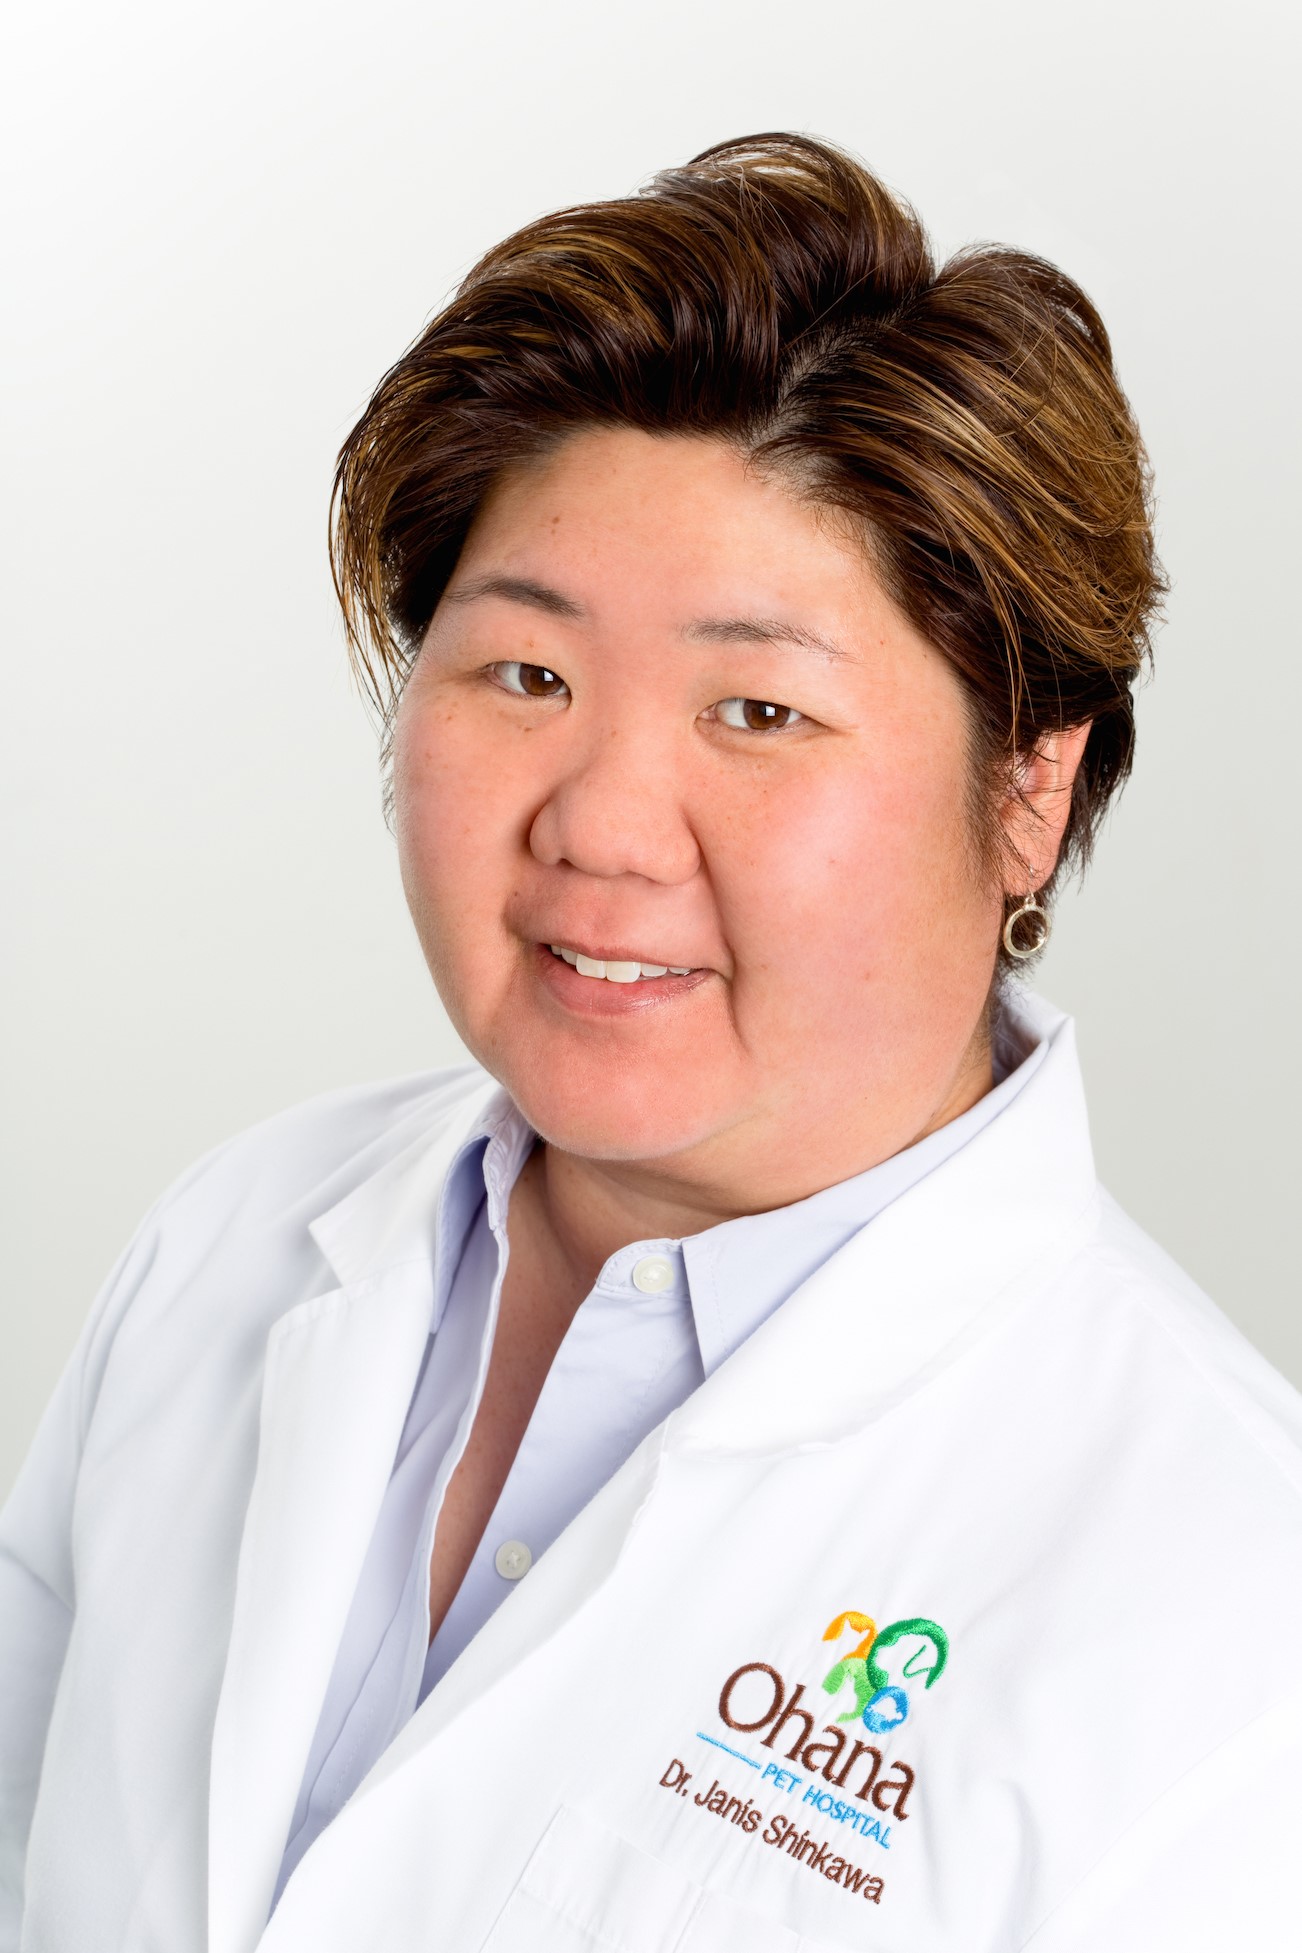 Dr. Janis Shinkawa